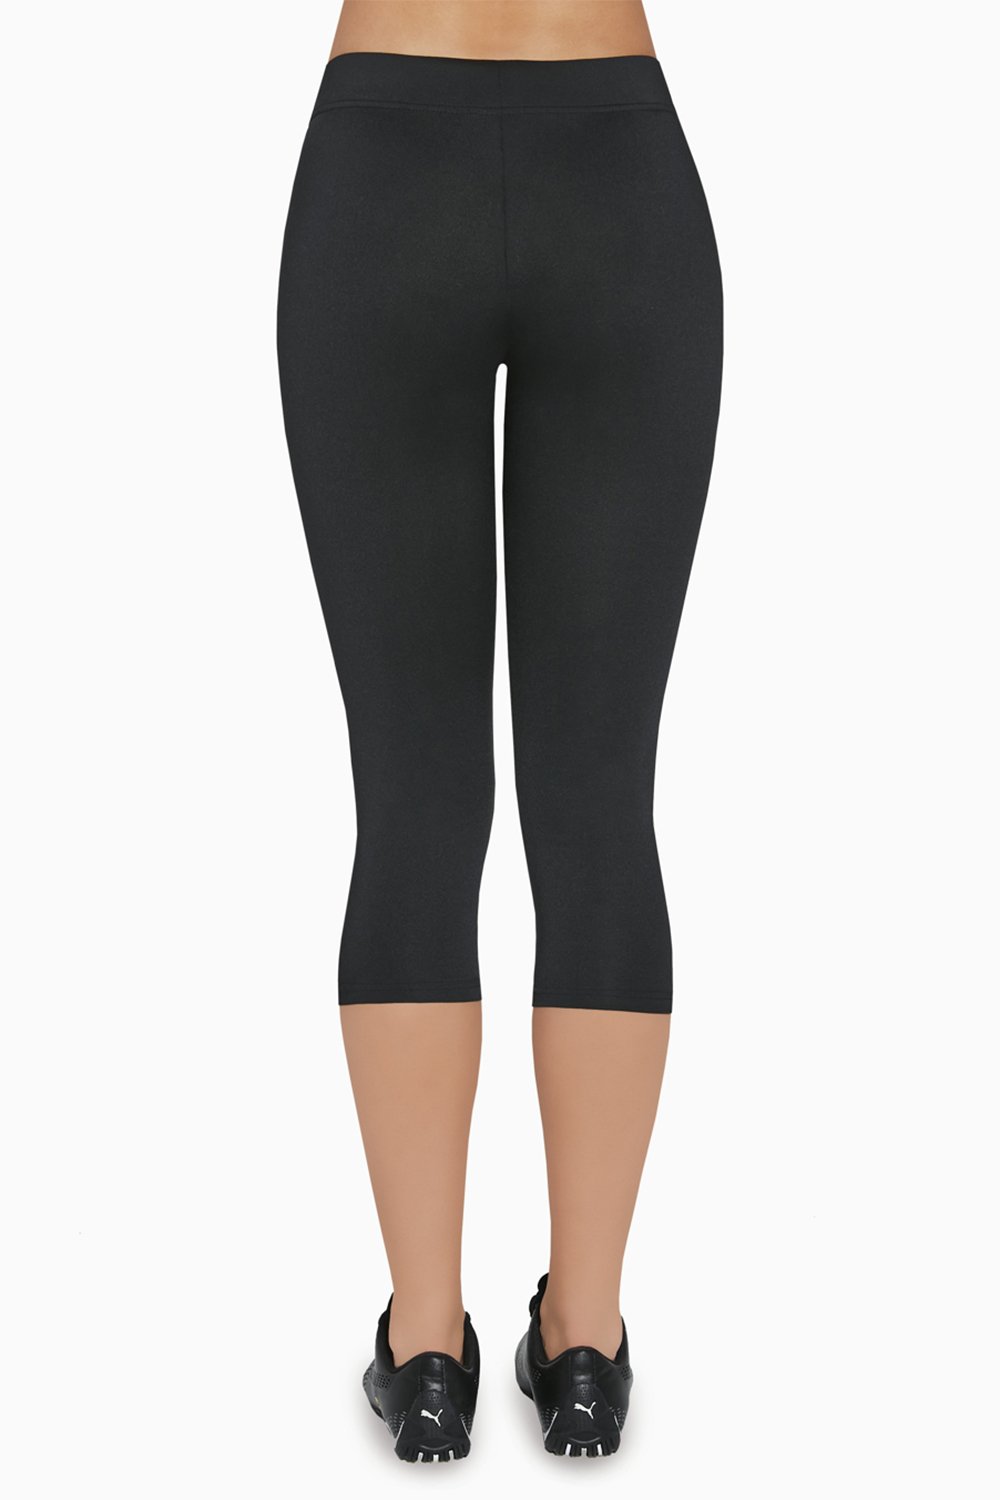 BasBlack Riley 70 - Plain black anti-cellulite capri length sports leggings.